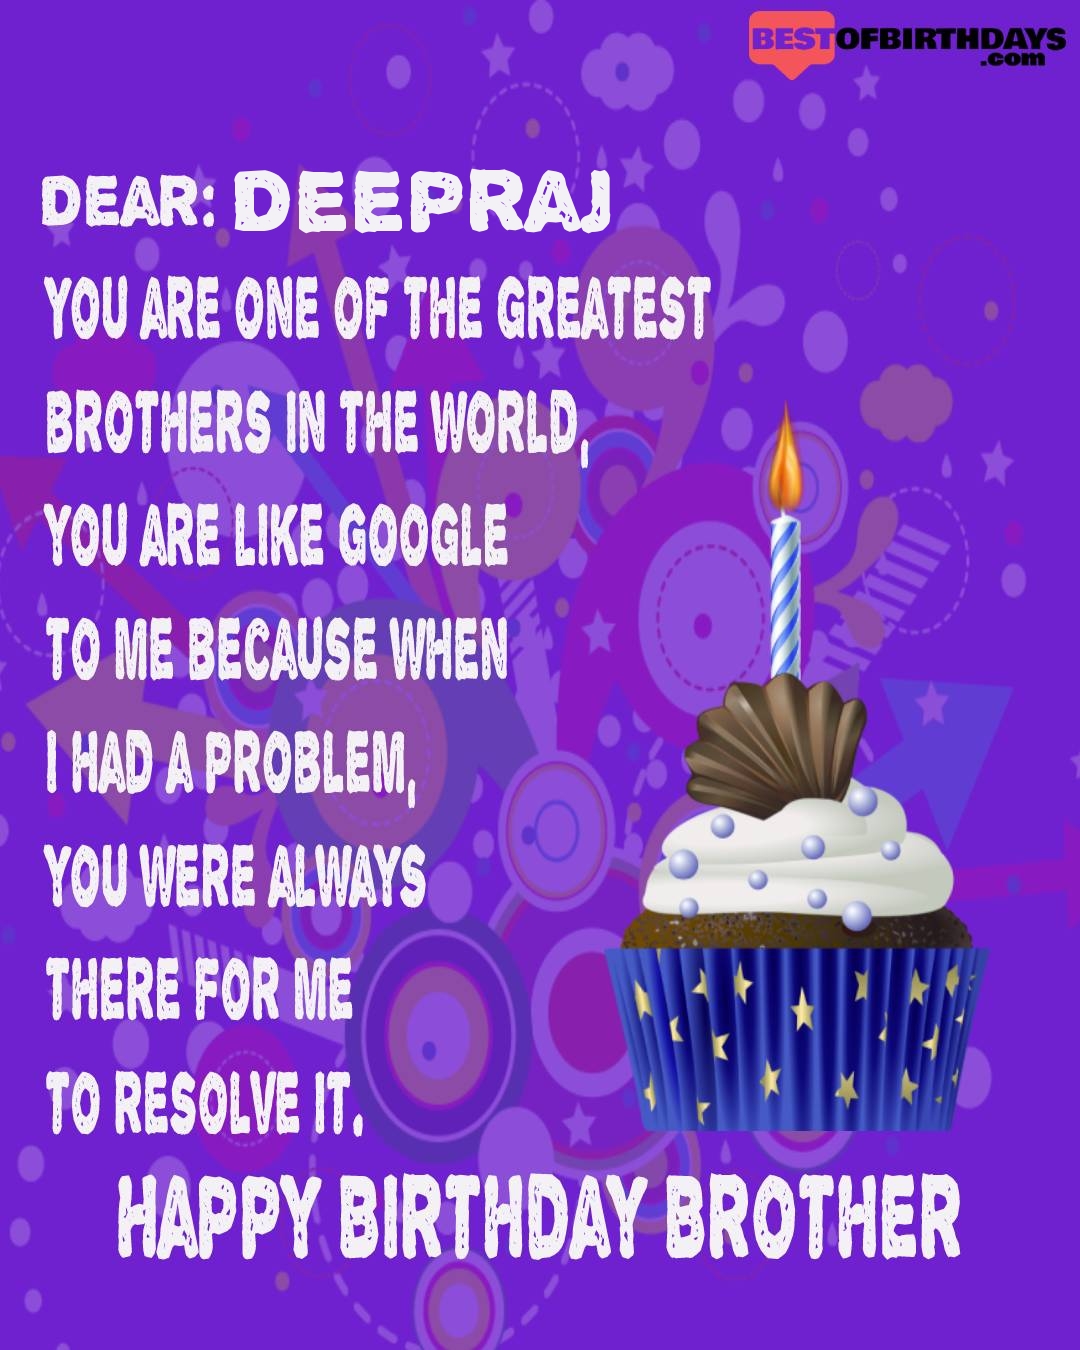 Happy birthday deepraj bhai brother bro